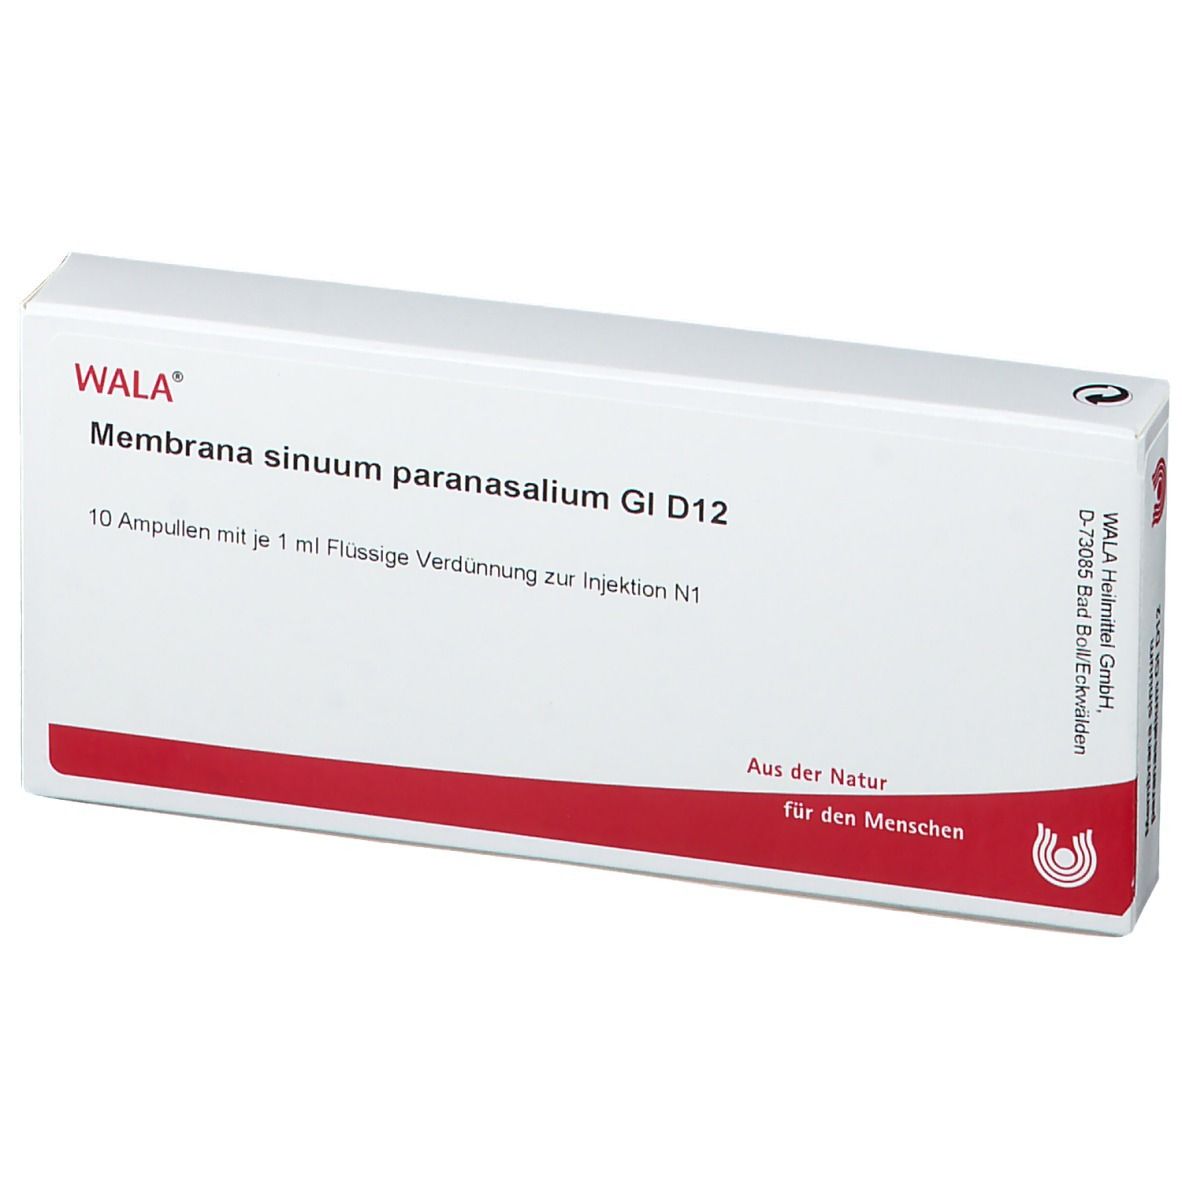 WALA® Membrana sinuum paranasalium Gl D 12